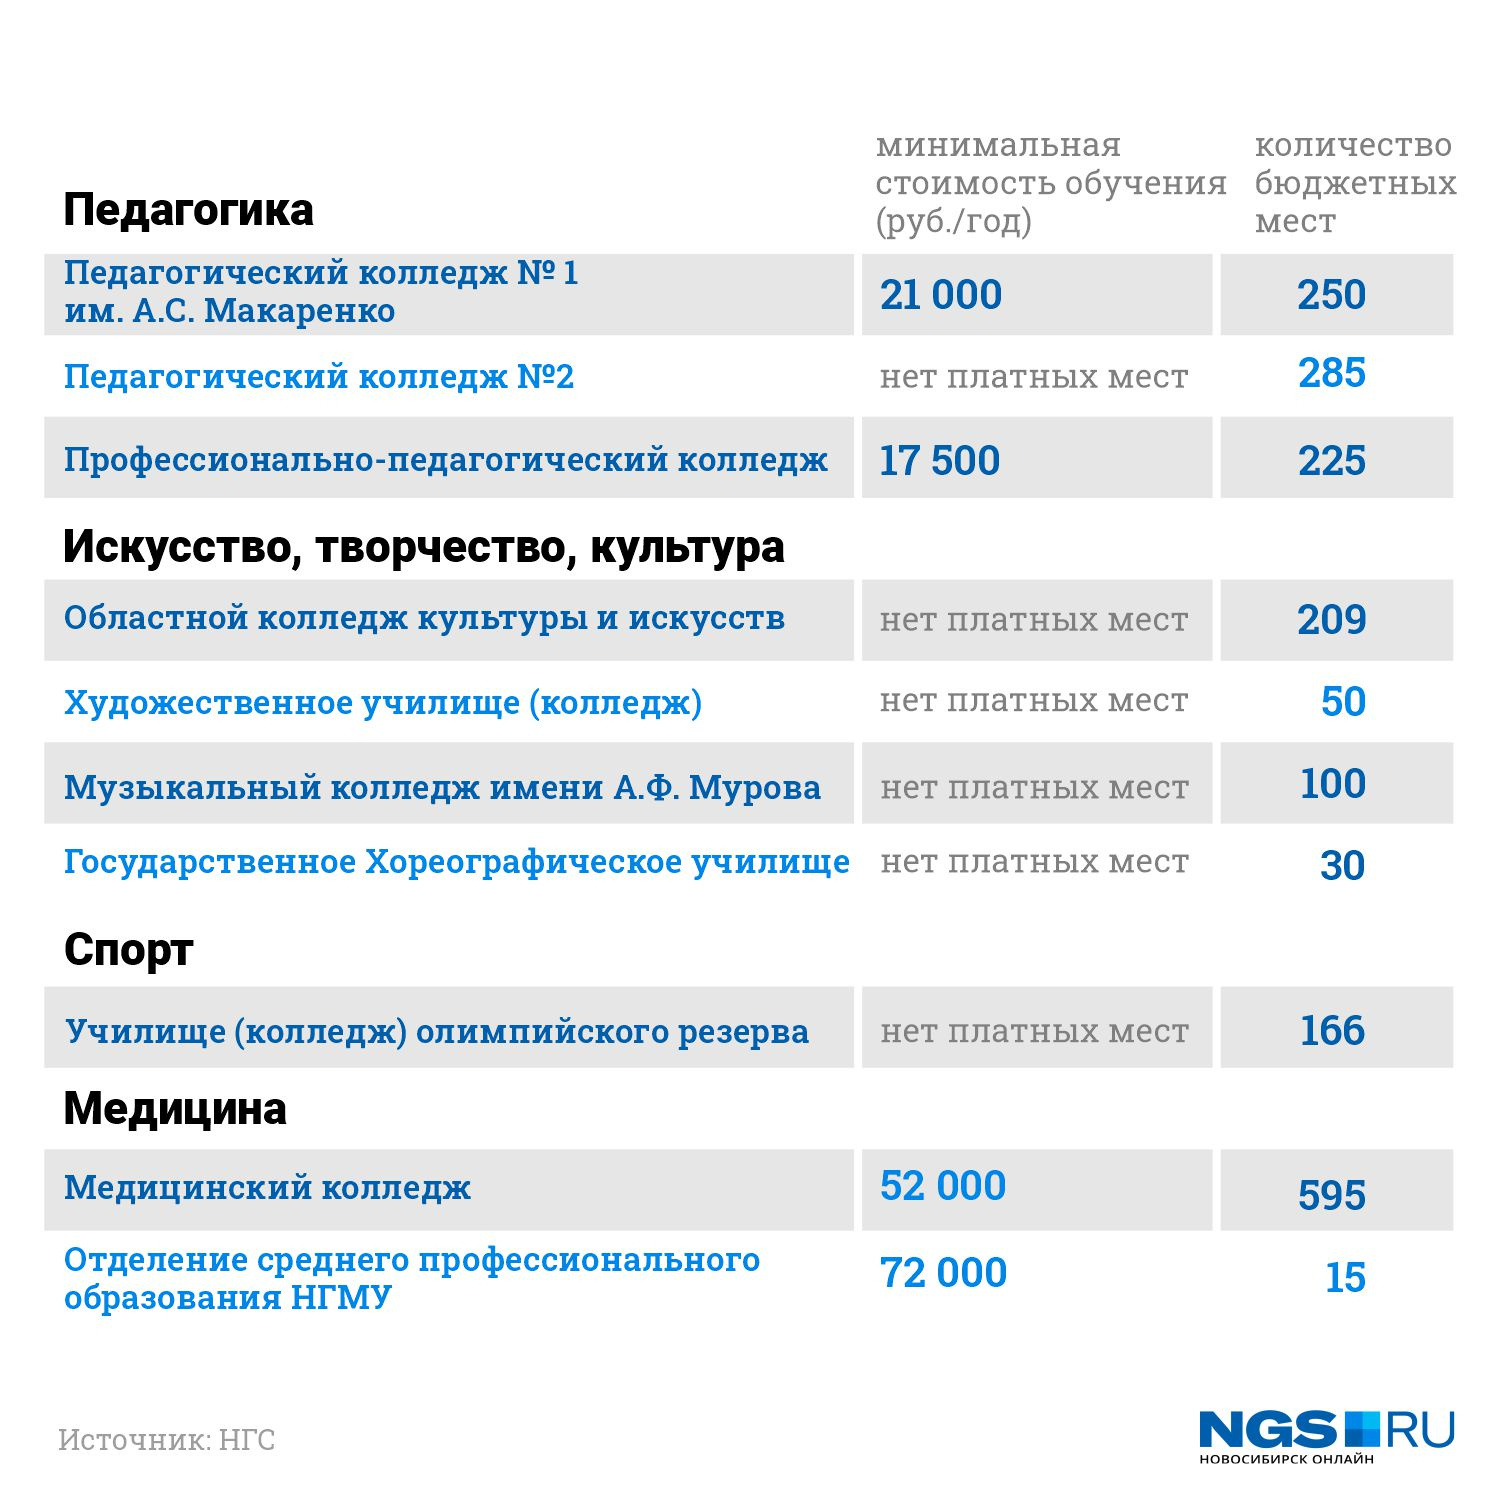 Колледжи после 9 новосибирск бюджет. Техникум Новосибирск после 9. Куда можно поступить после 9 класса. Список для колледжа. Новосибирск колледжи после 9 класса бюджет.